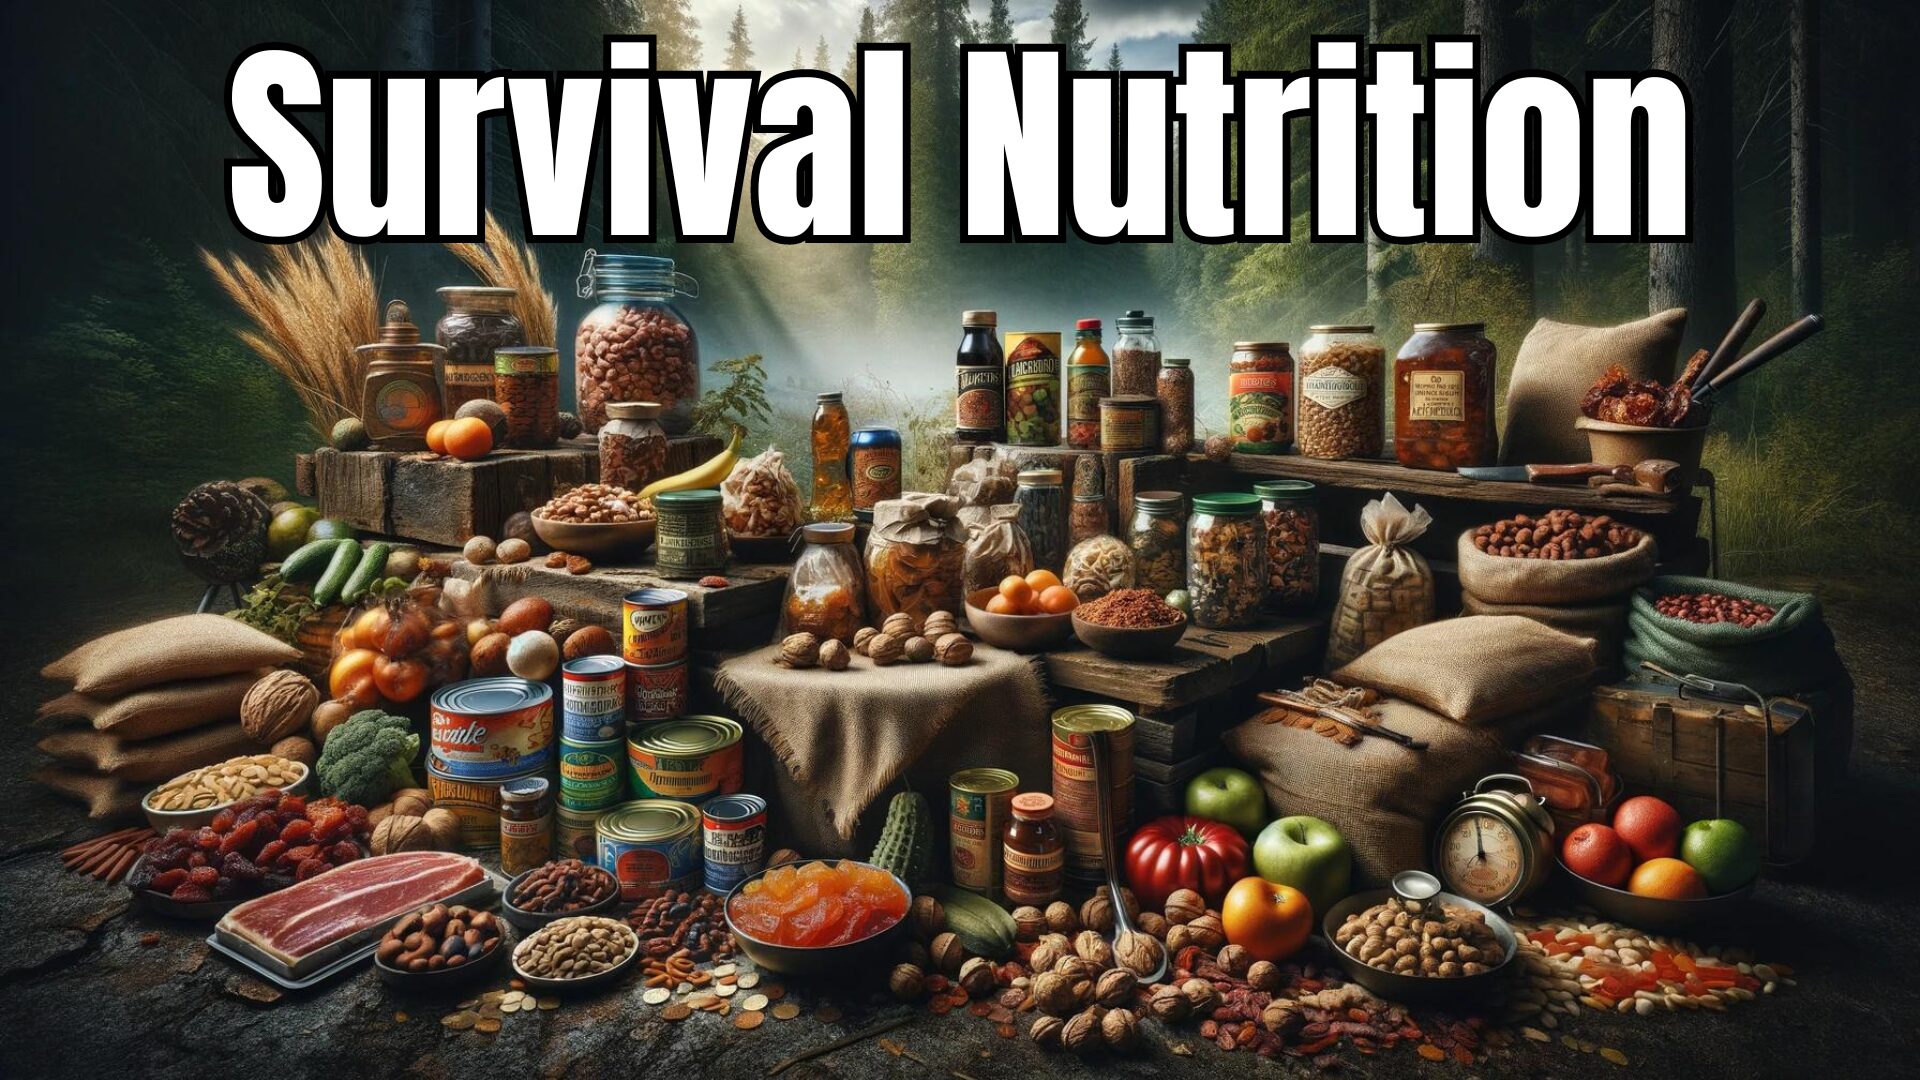 Survival Nutrition